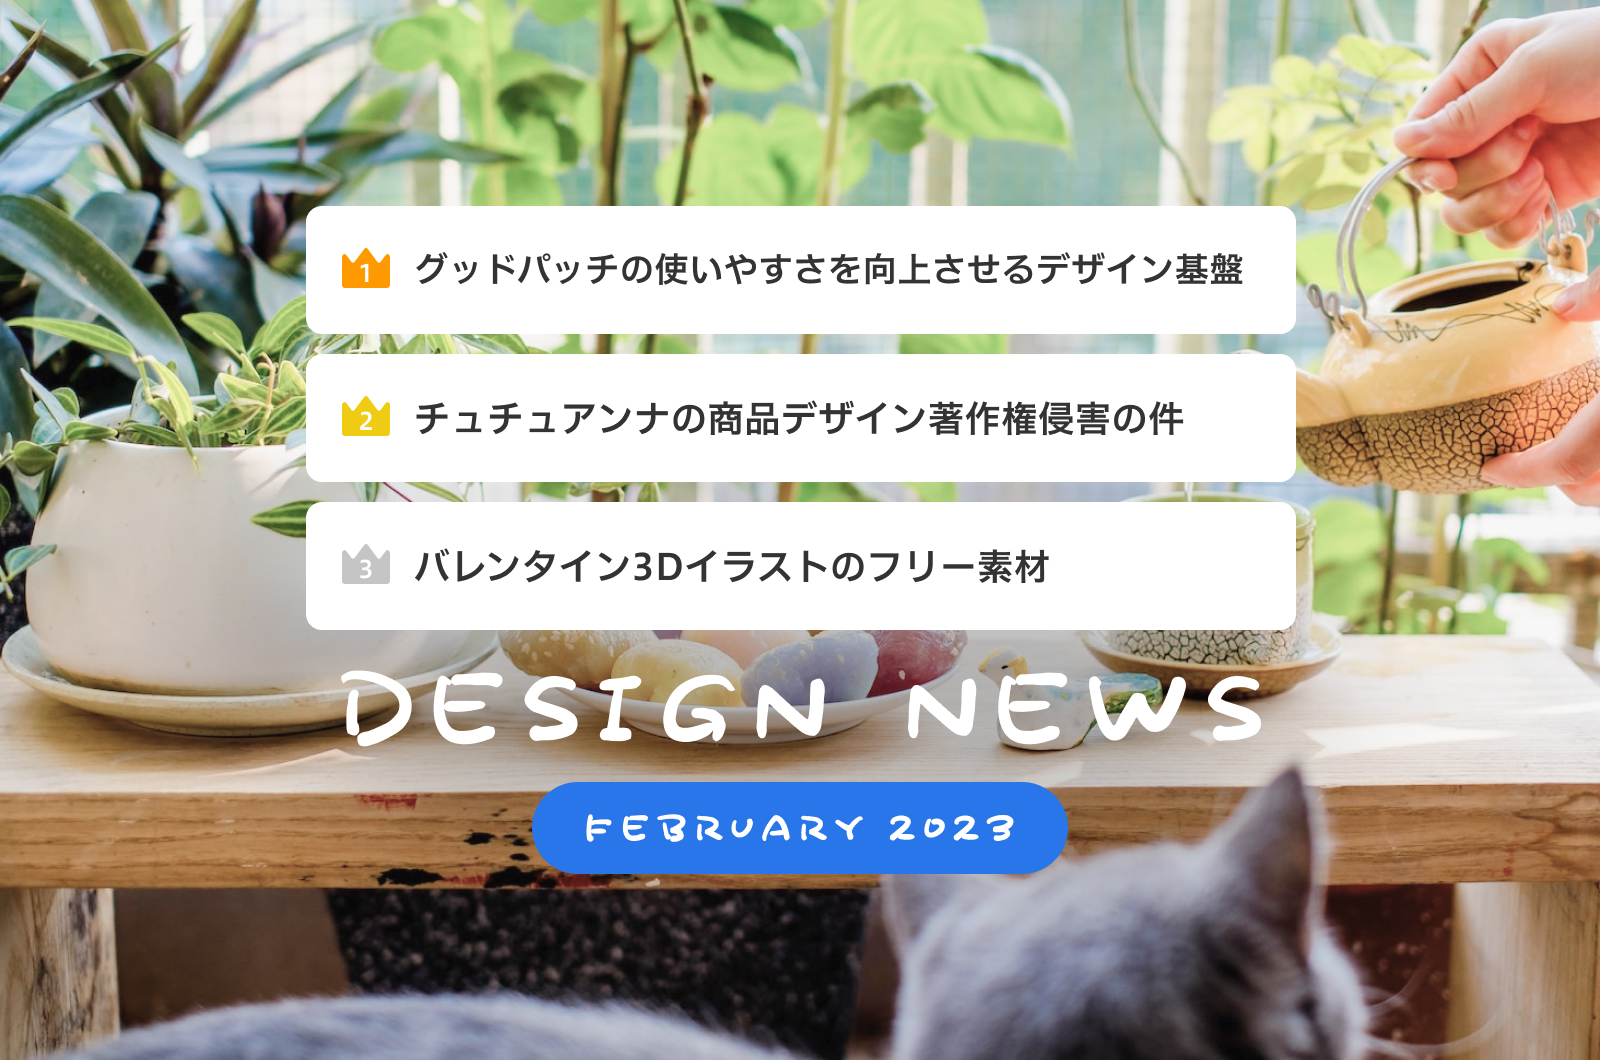 Design News (February 2023)